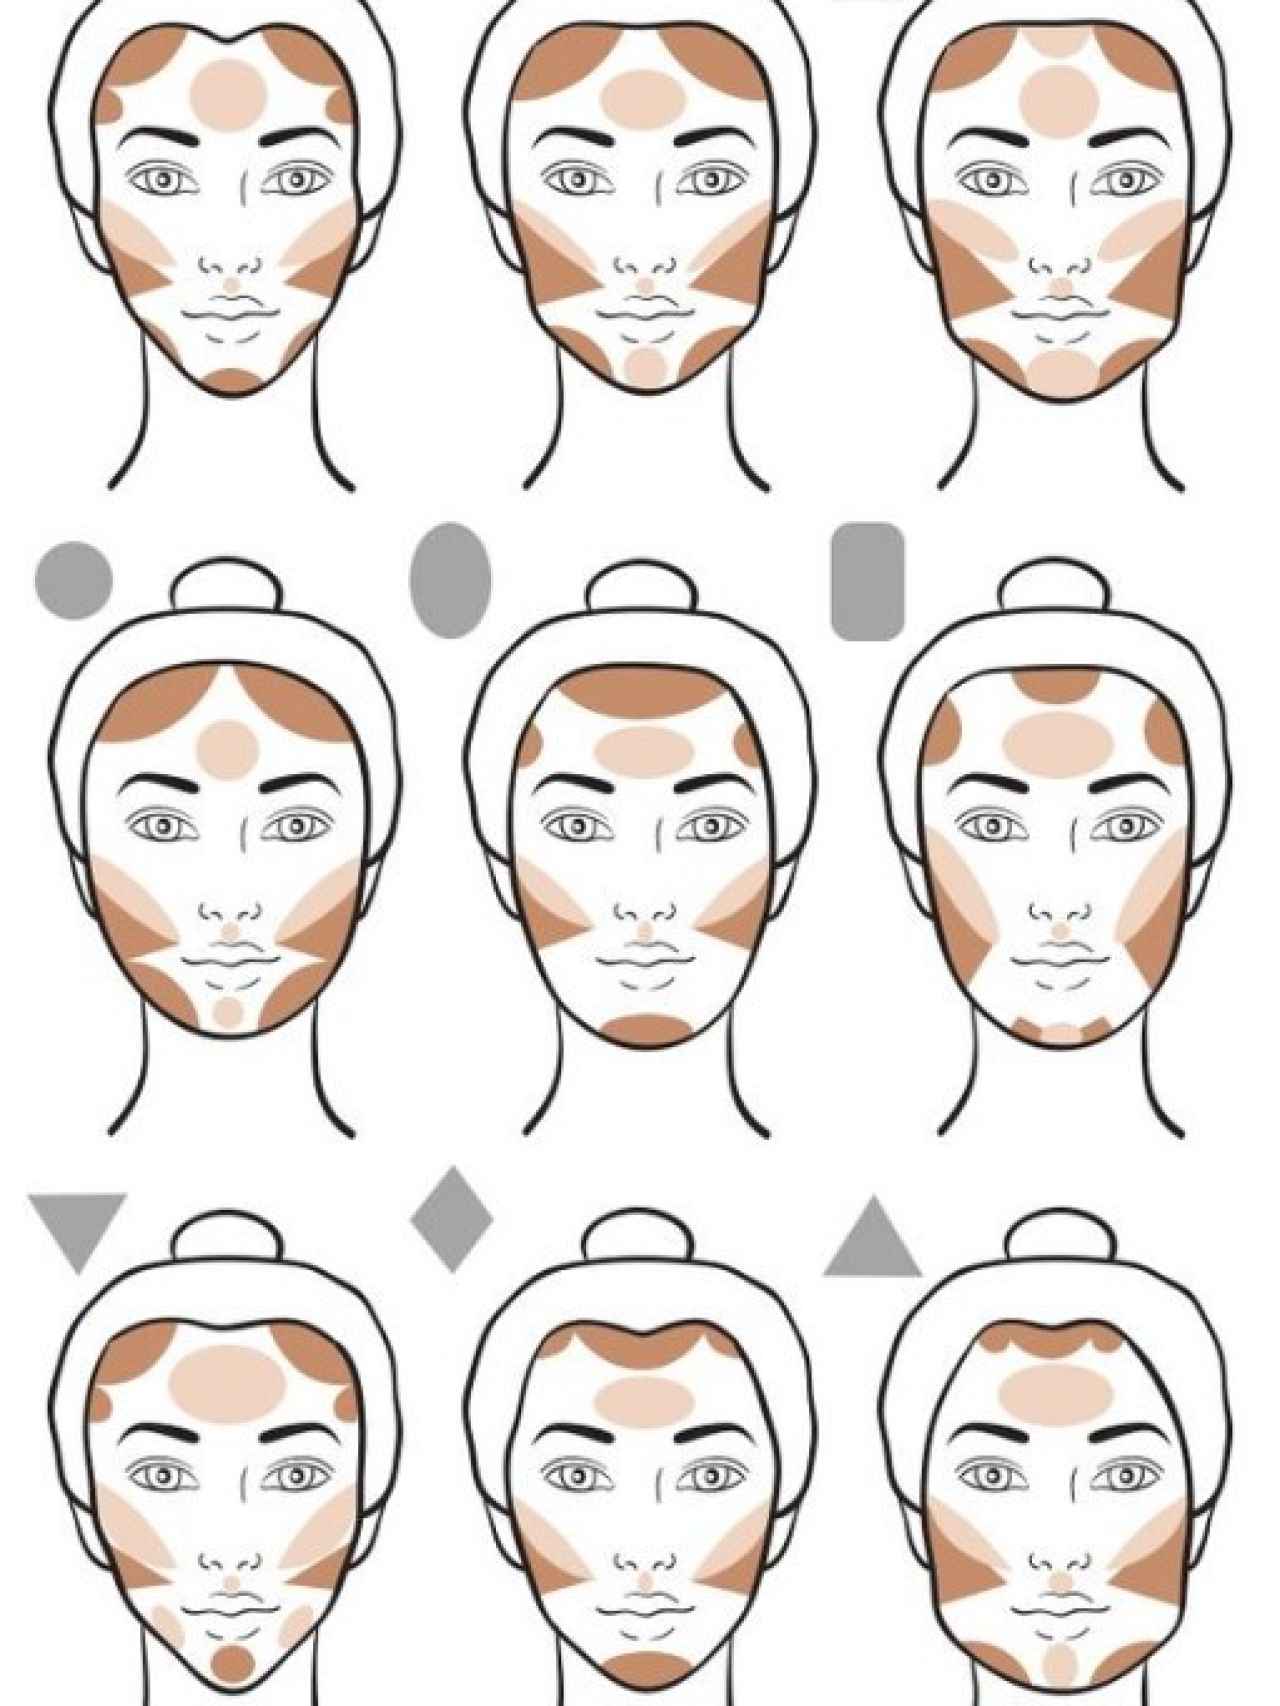 Diferentes métodos de uso del 'contouring' dependiendo de la forma de la cara.